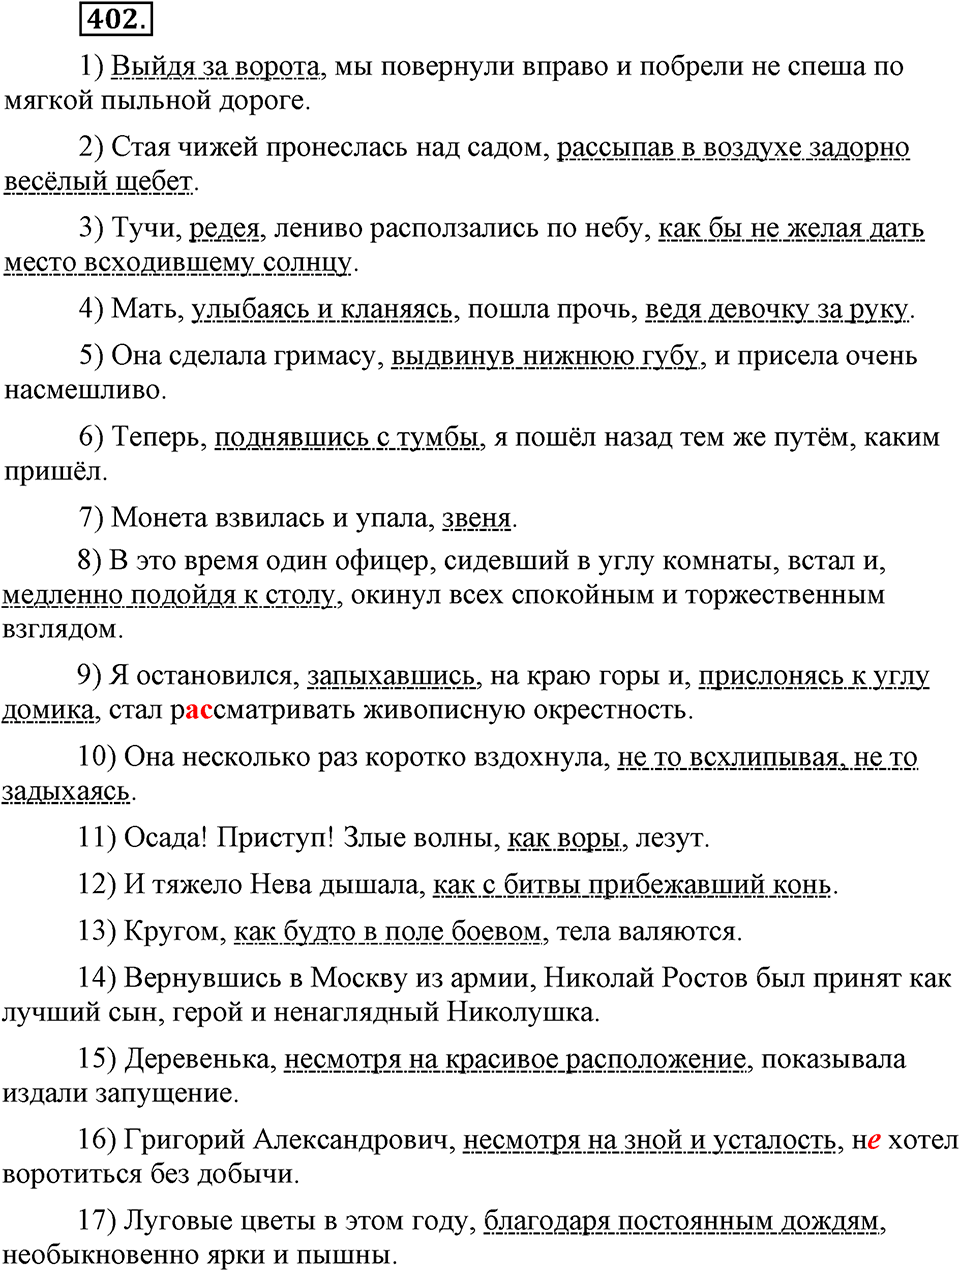 страница 183 номер 402 русский язык 9 класс Бархударов 2011 год